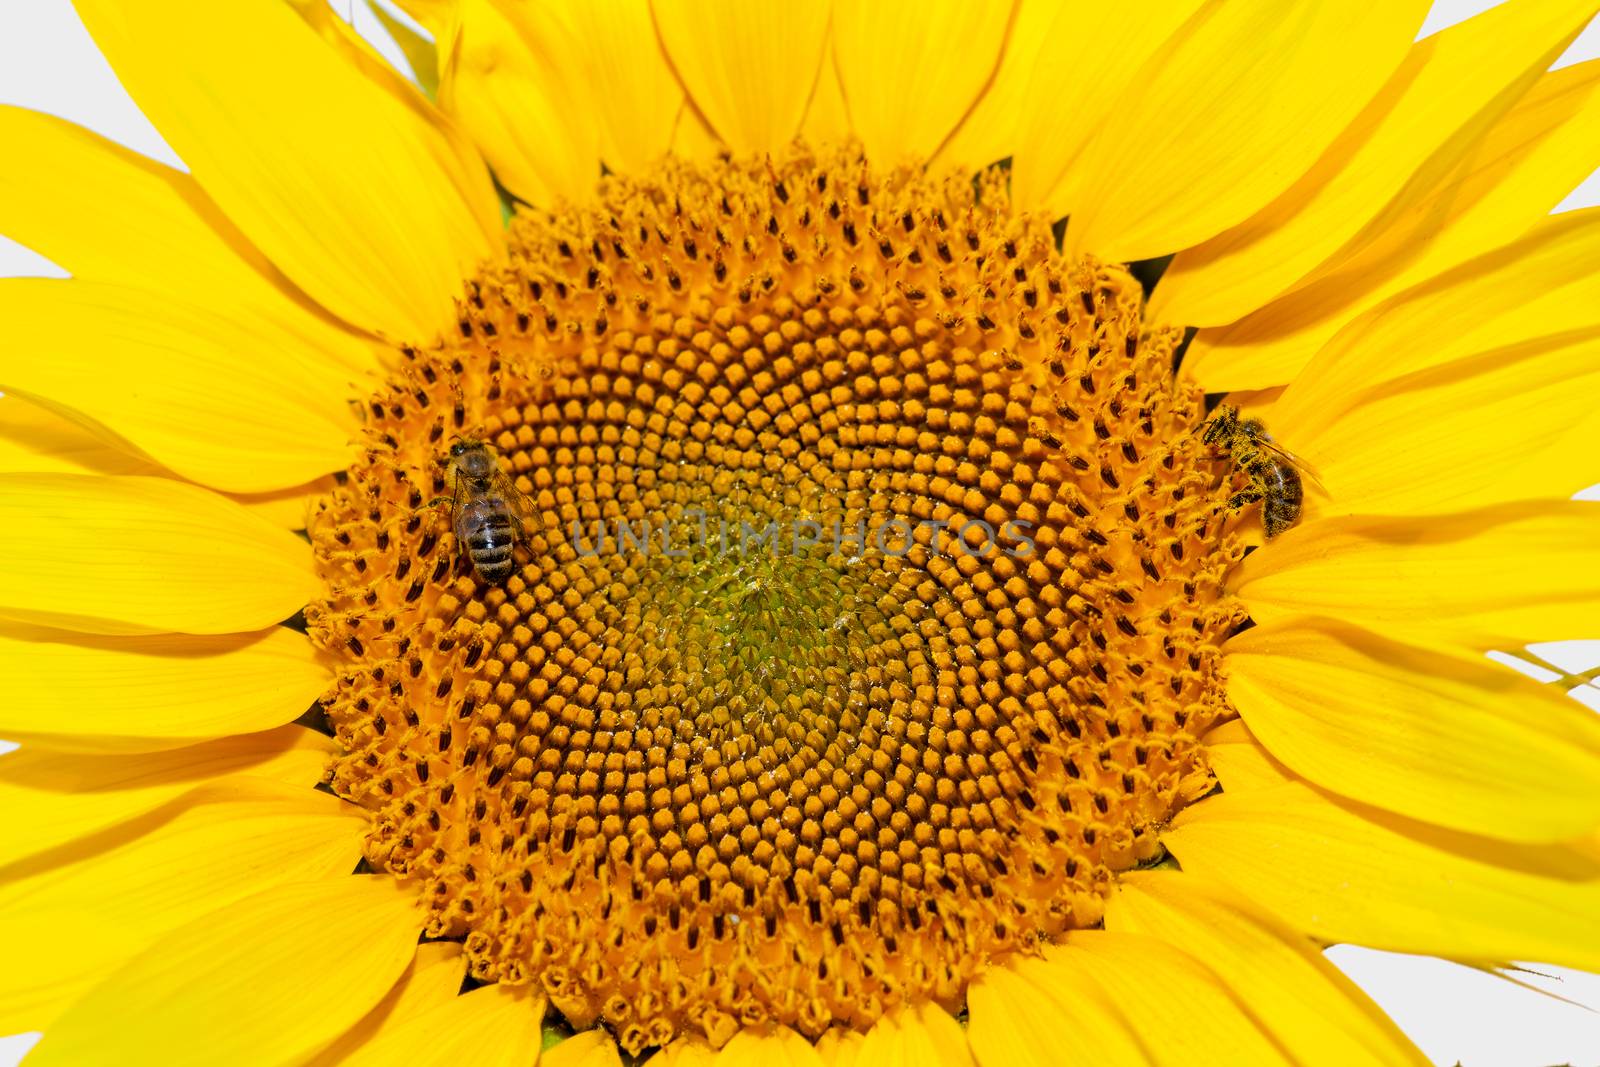 Honey bees on sunflower. by fogen